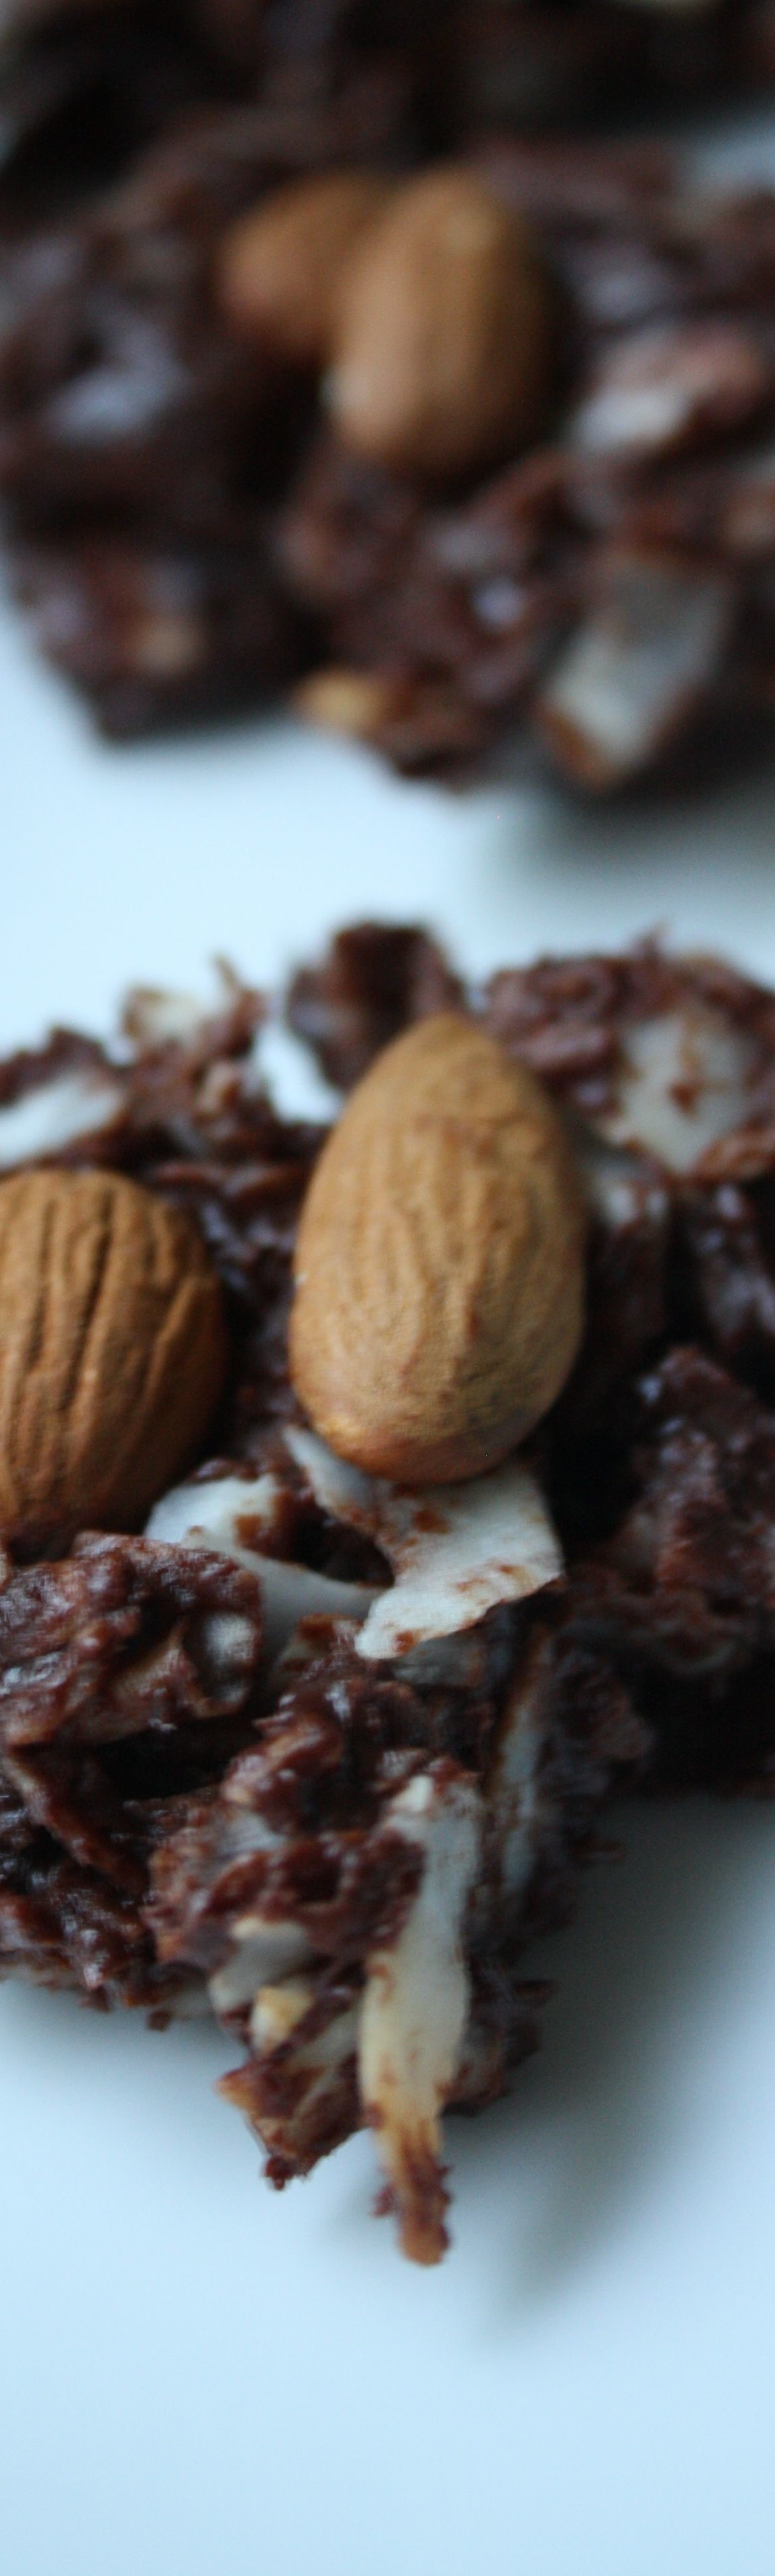 DESSERT RECIPES- Homemade Almond Joys